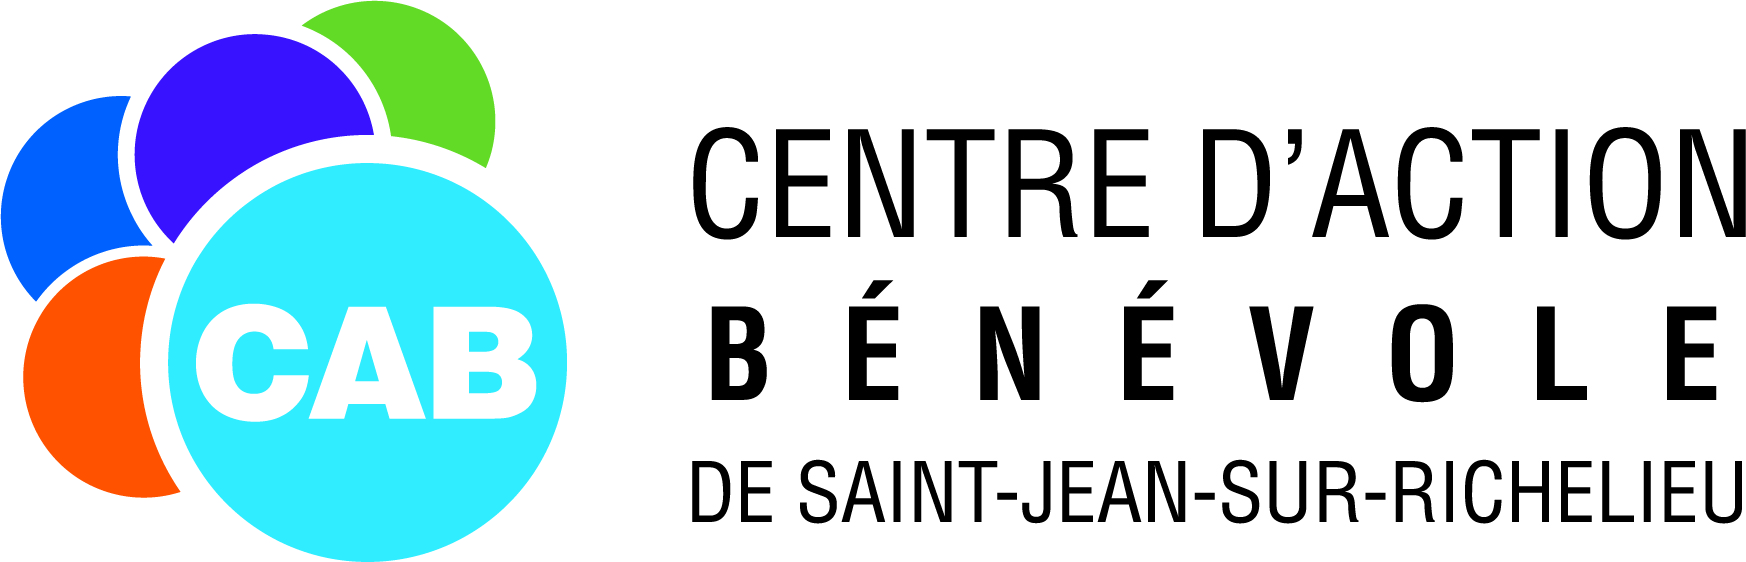 Centre d'action bénévole de Saint-Jean-sur-Richelieu